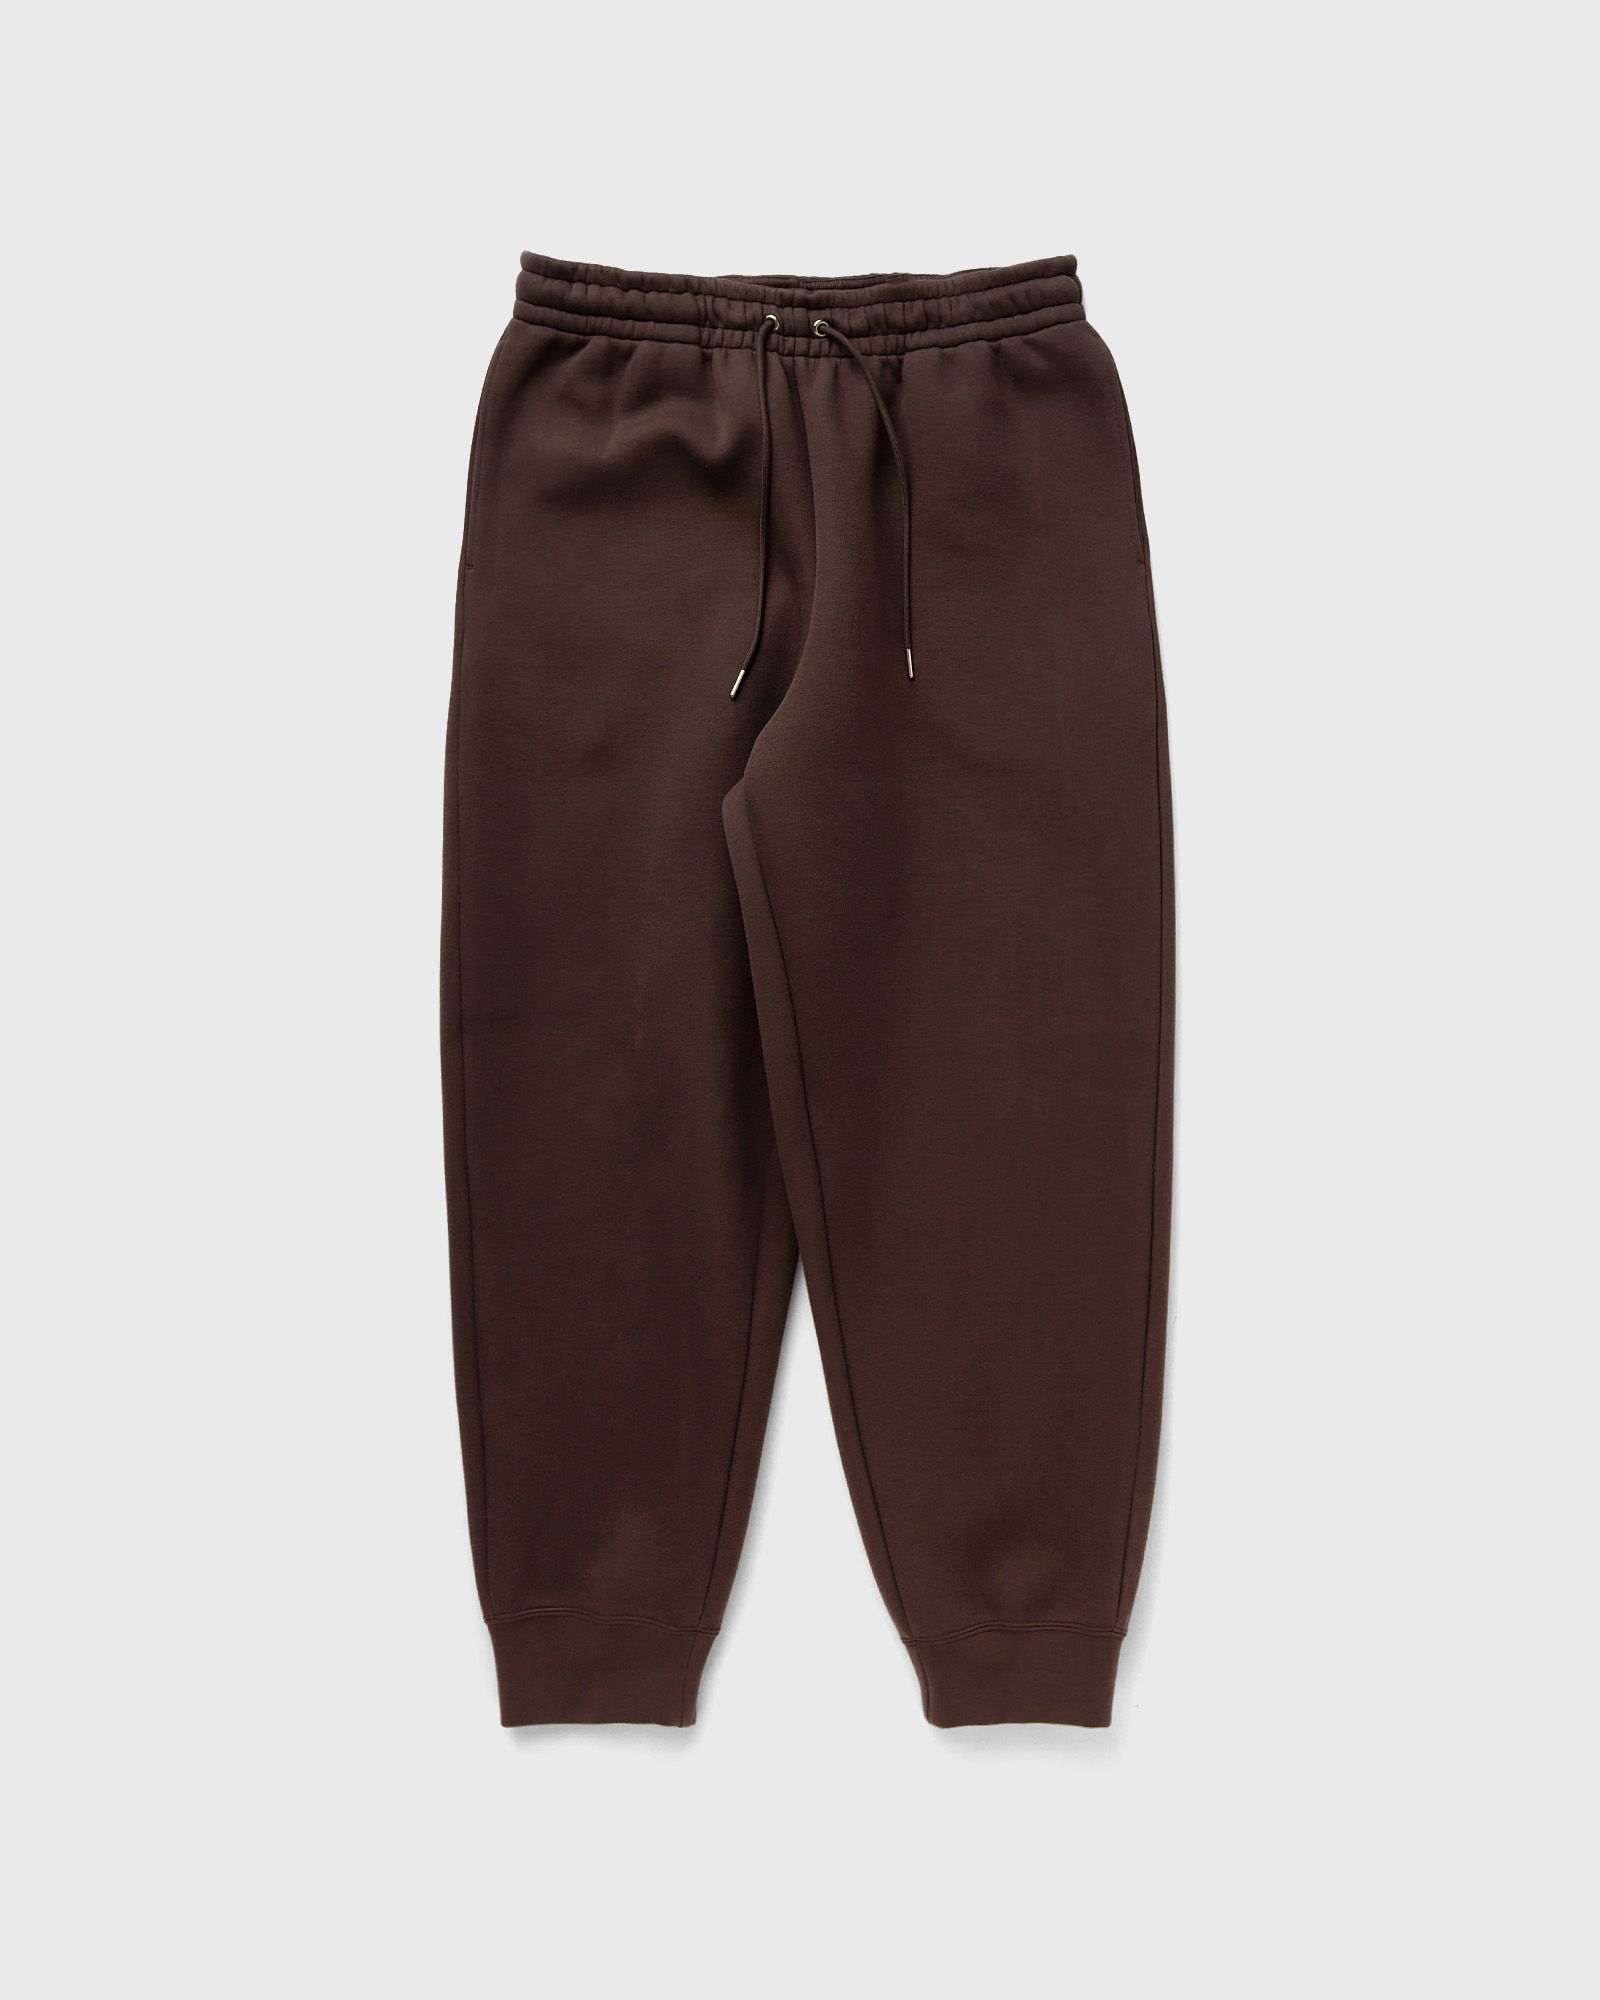 Nike - tech fleece reimagined fleece pants men sweatpants brown in größe:xl